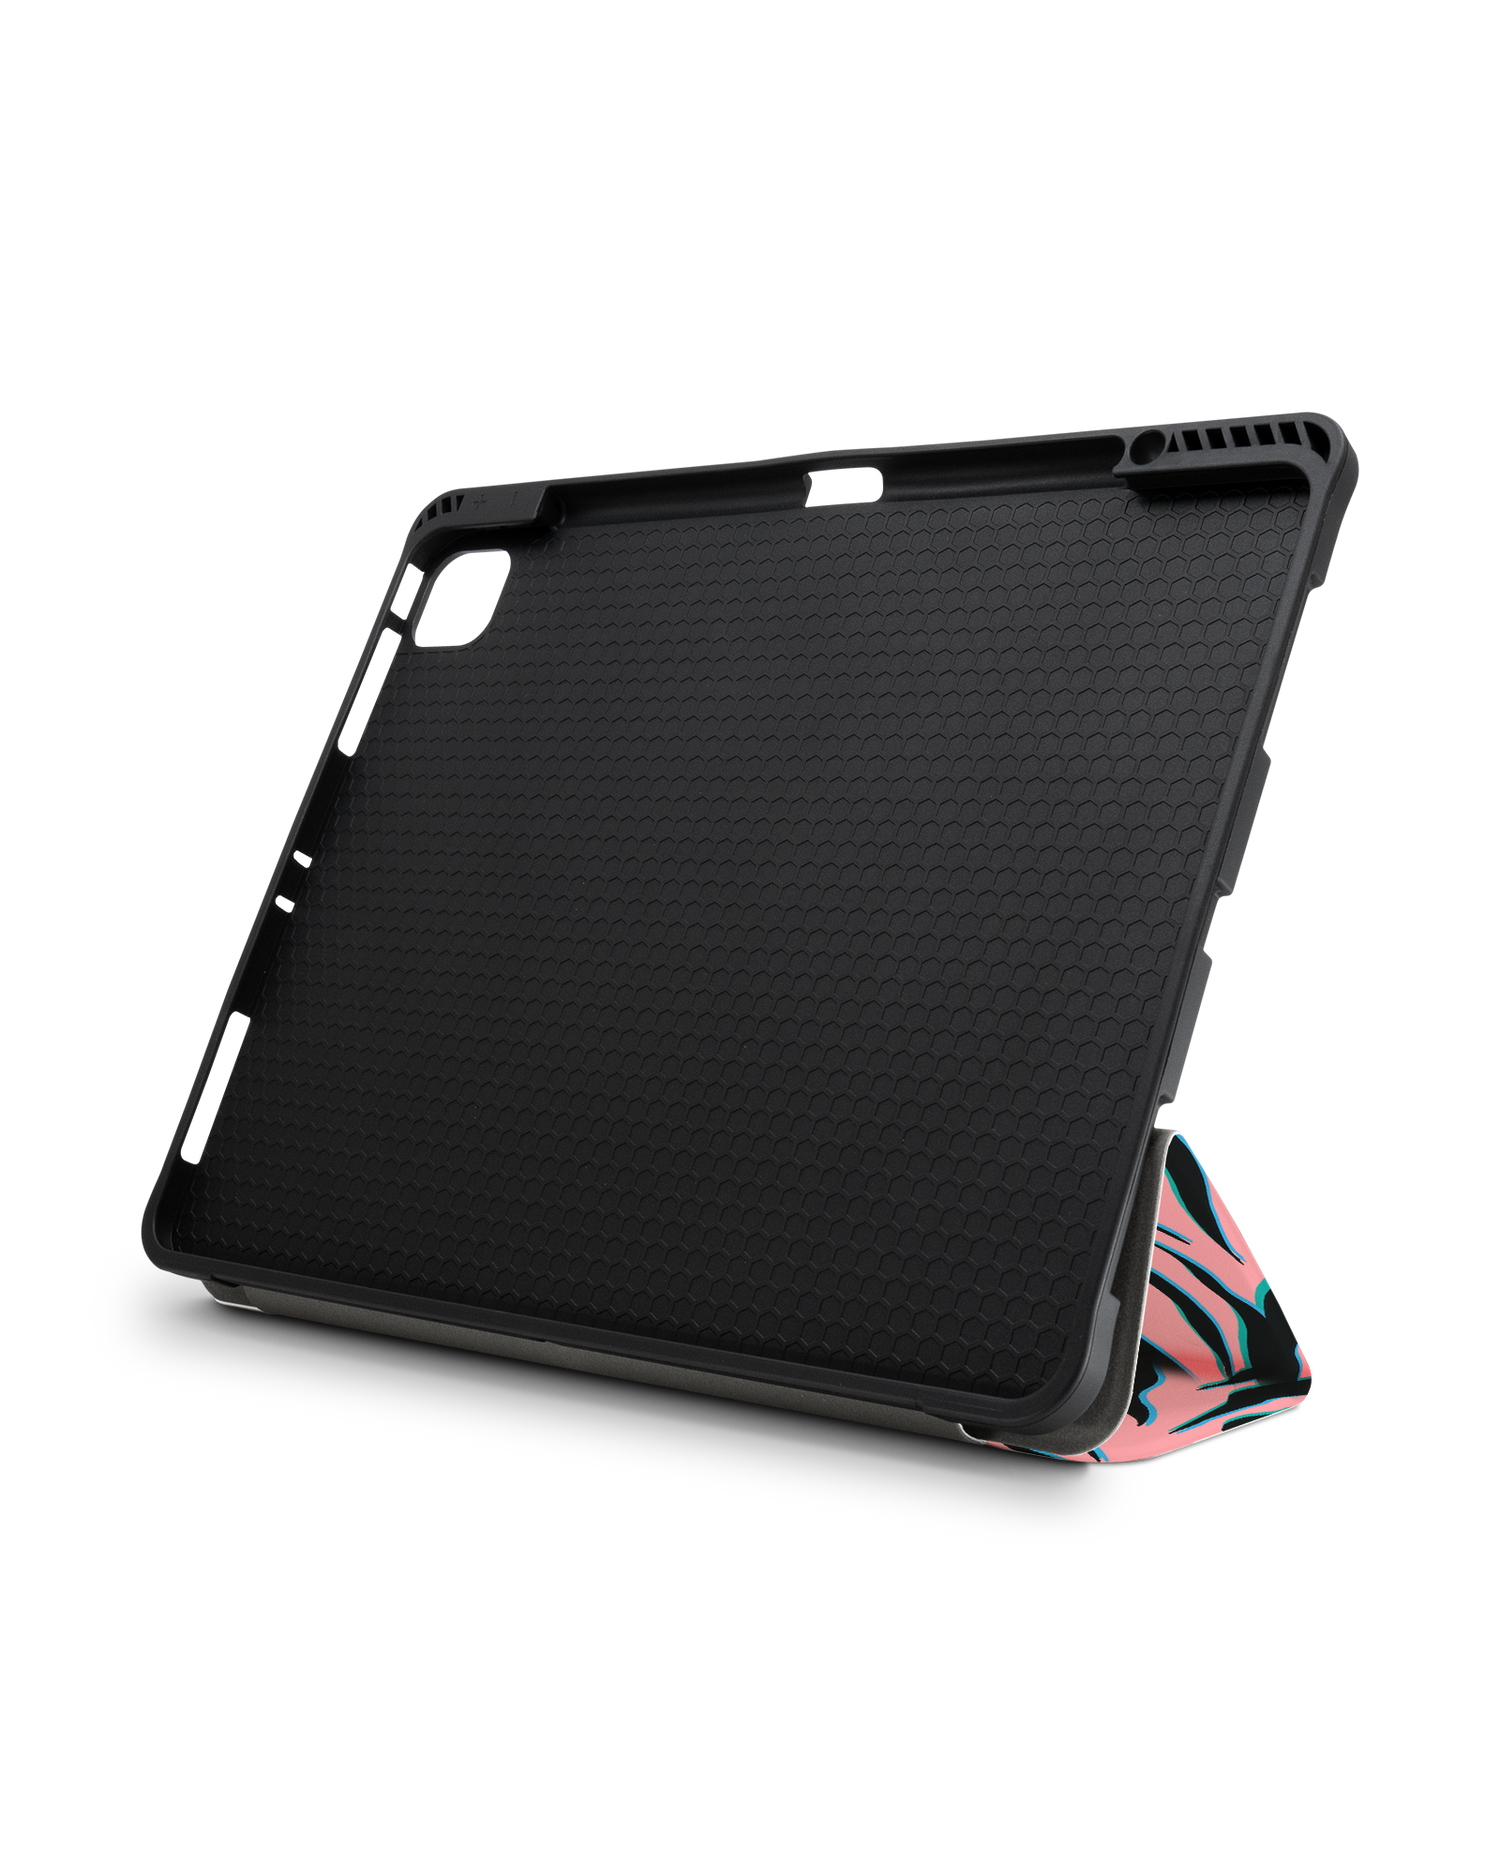 Pink Zebra iPad Hülle mit Stifthalter für Apple iPad Pro 6 12.9